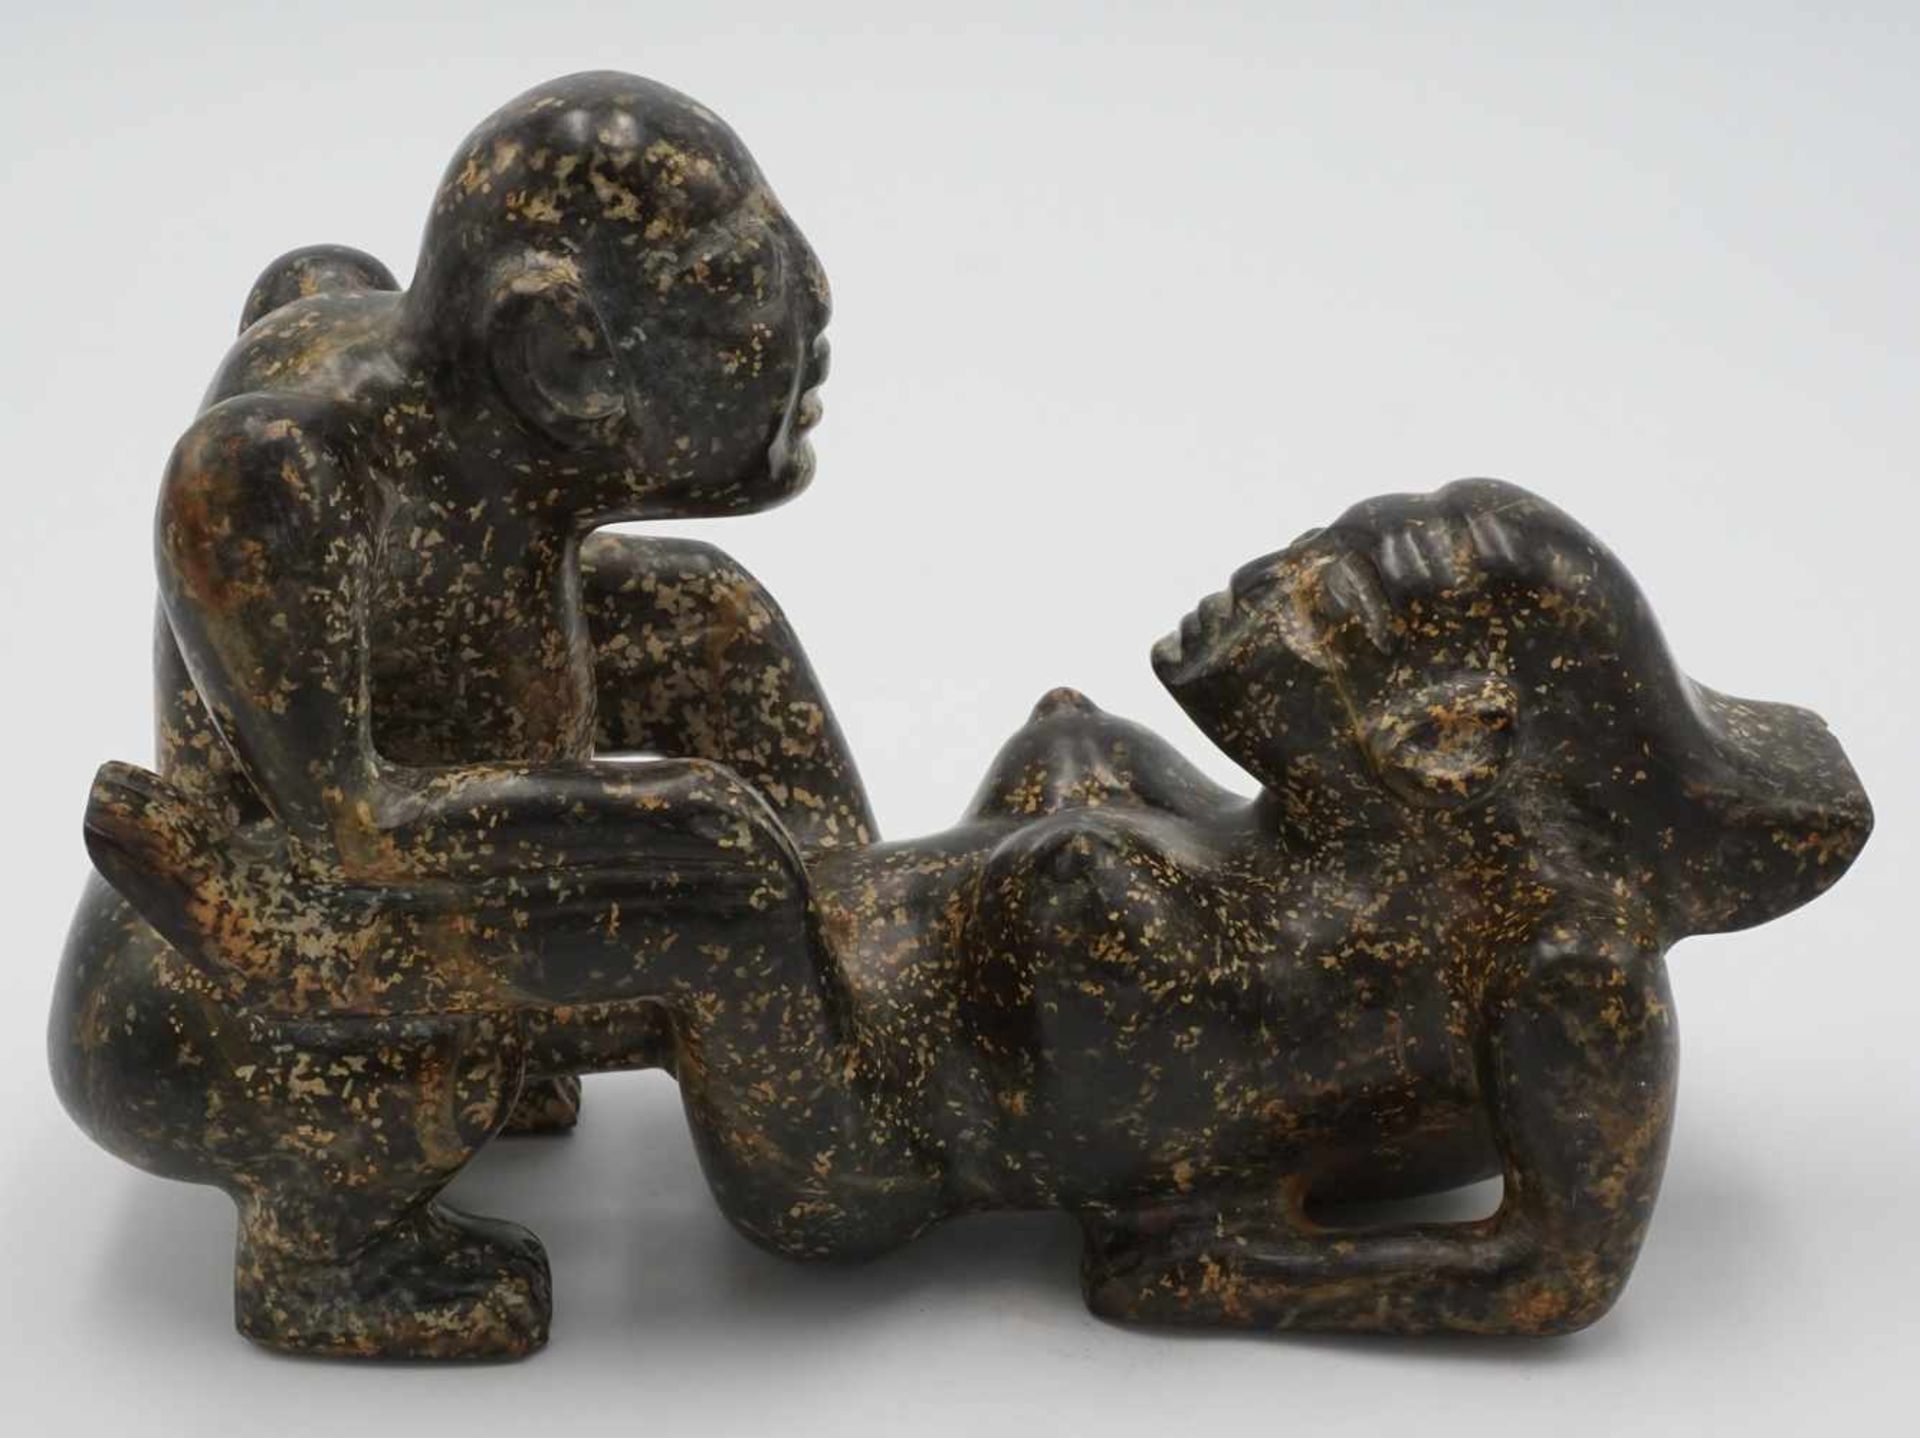 Kopulierendes Paar, China, 20. Jh.schwarze Jade mit braunen Einschlüssen, erotische Darstellung, - Bild 2 aus 3